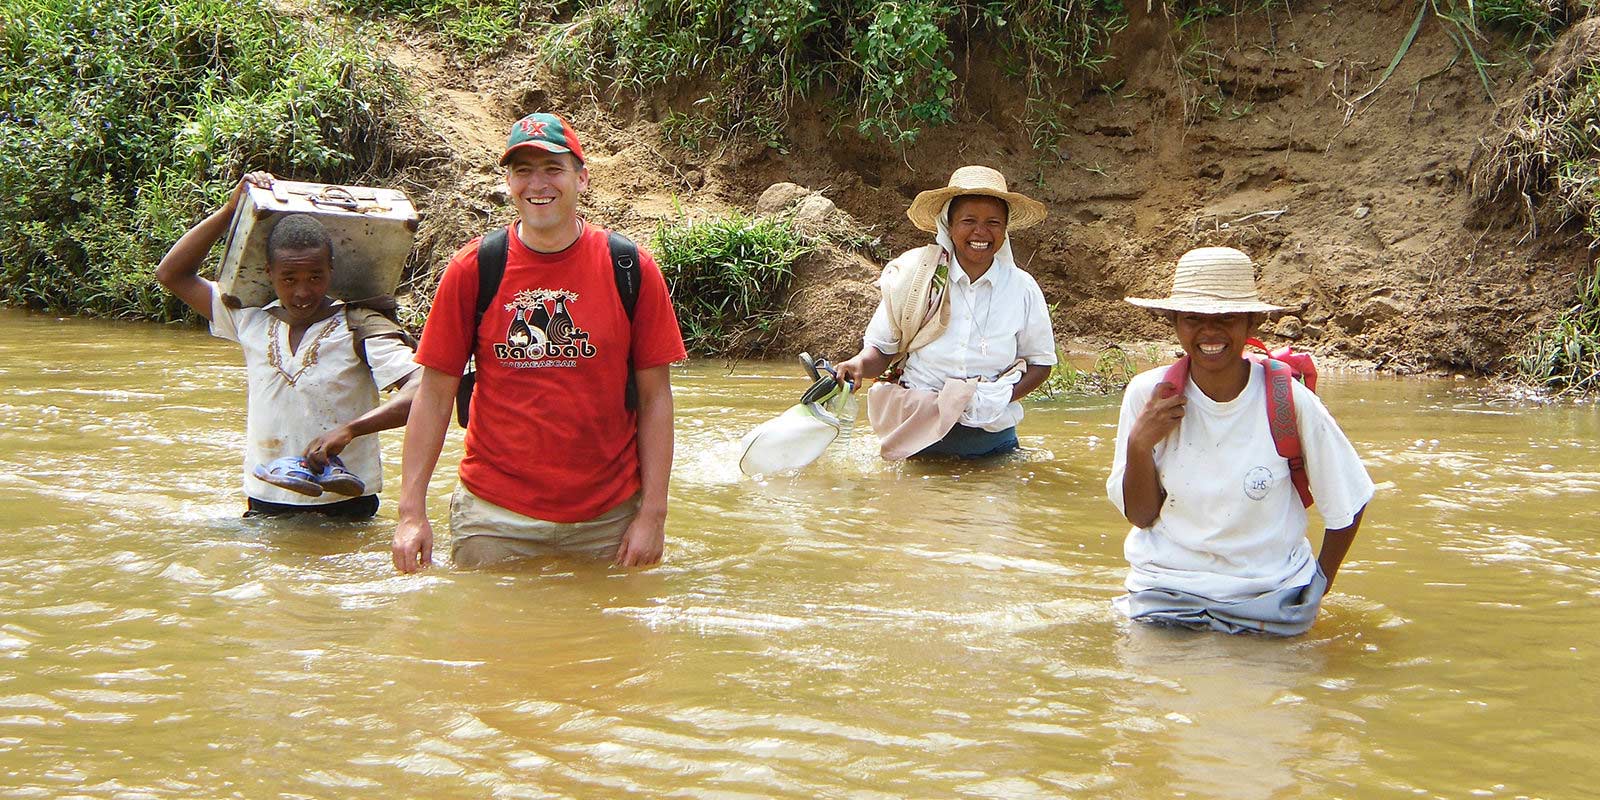 Ojciec Andrzej Dzida przechodzi przez wodę podczas misyjnego patrolu na Madagaskarze.